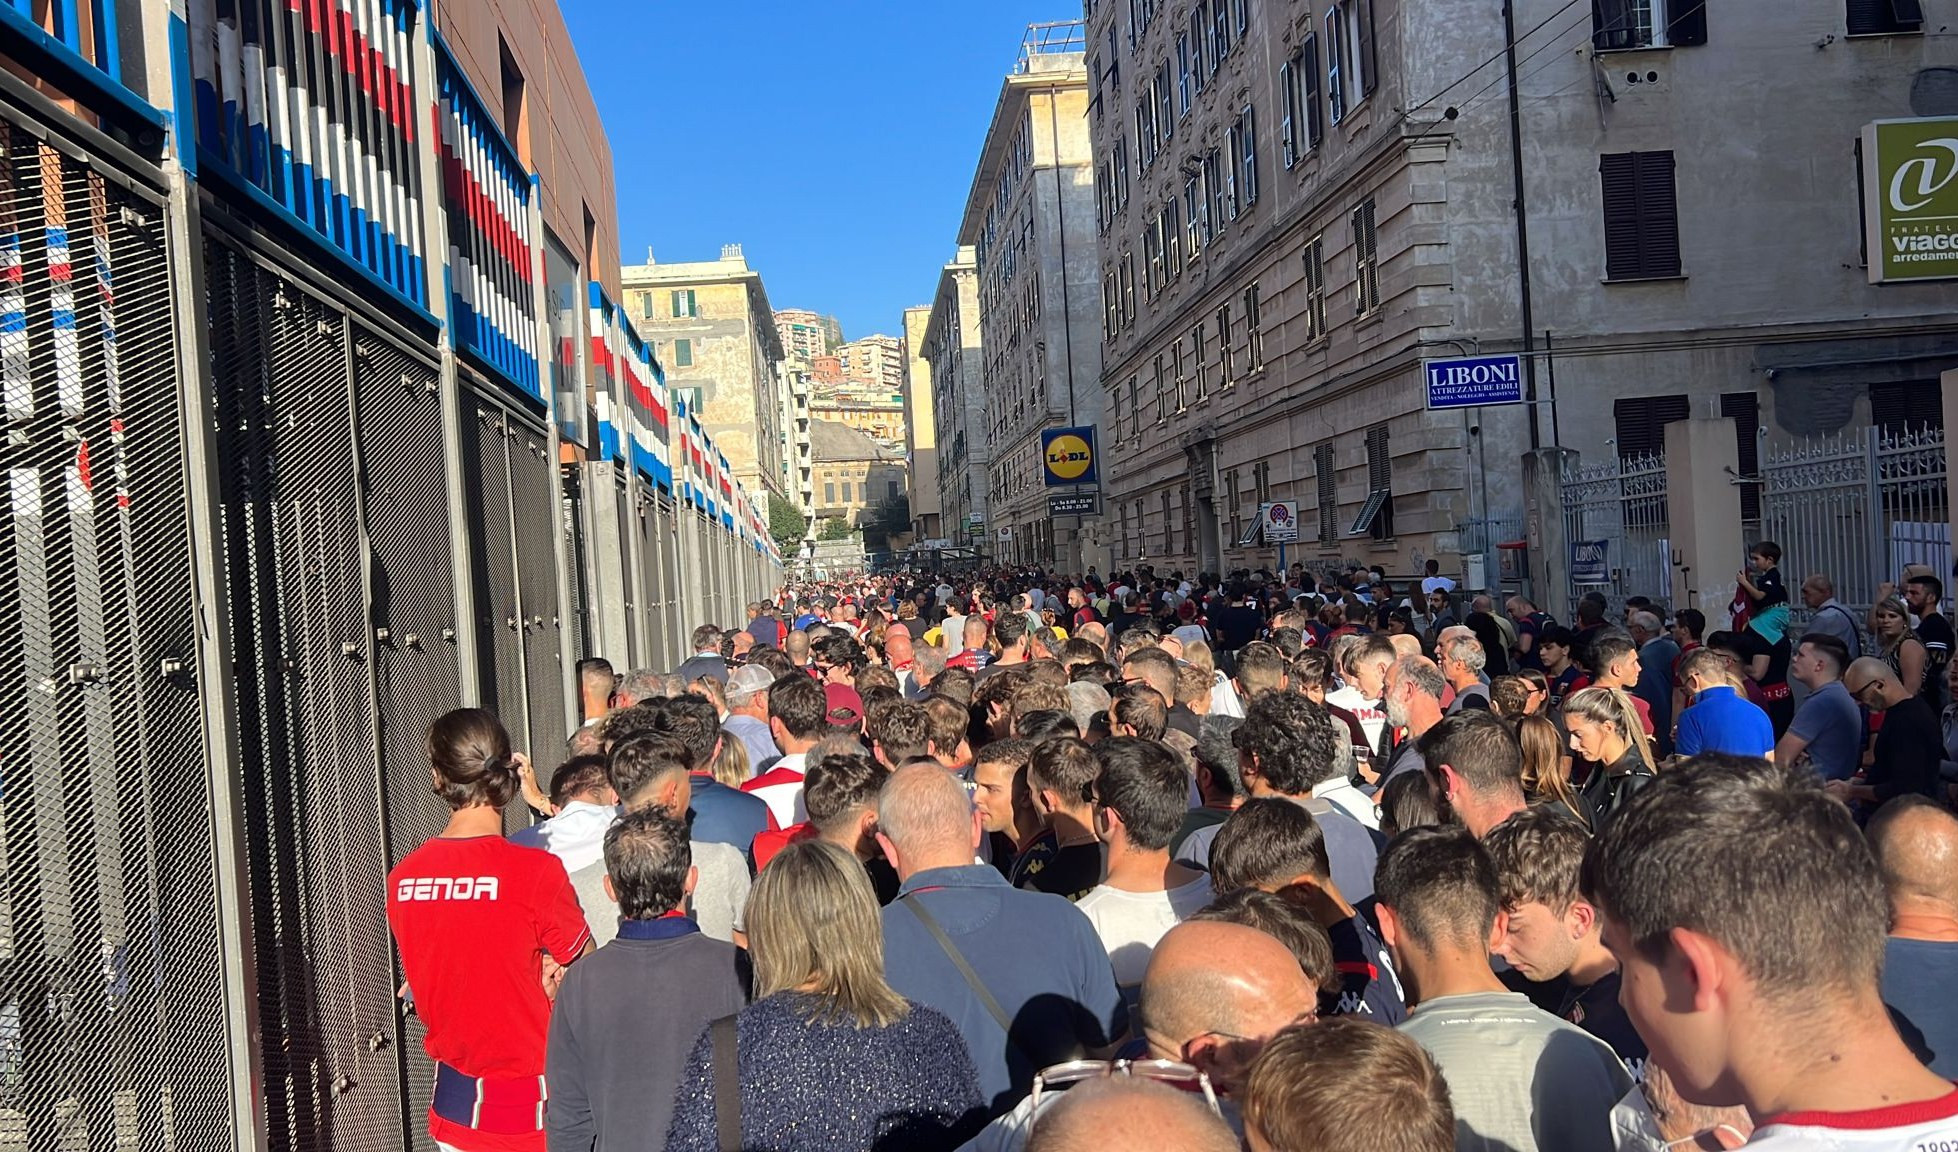 Pochi tornelli al Ferraris, centinaia di tifosi entrati in ritardo a Genoa-Brescia